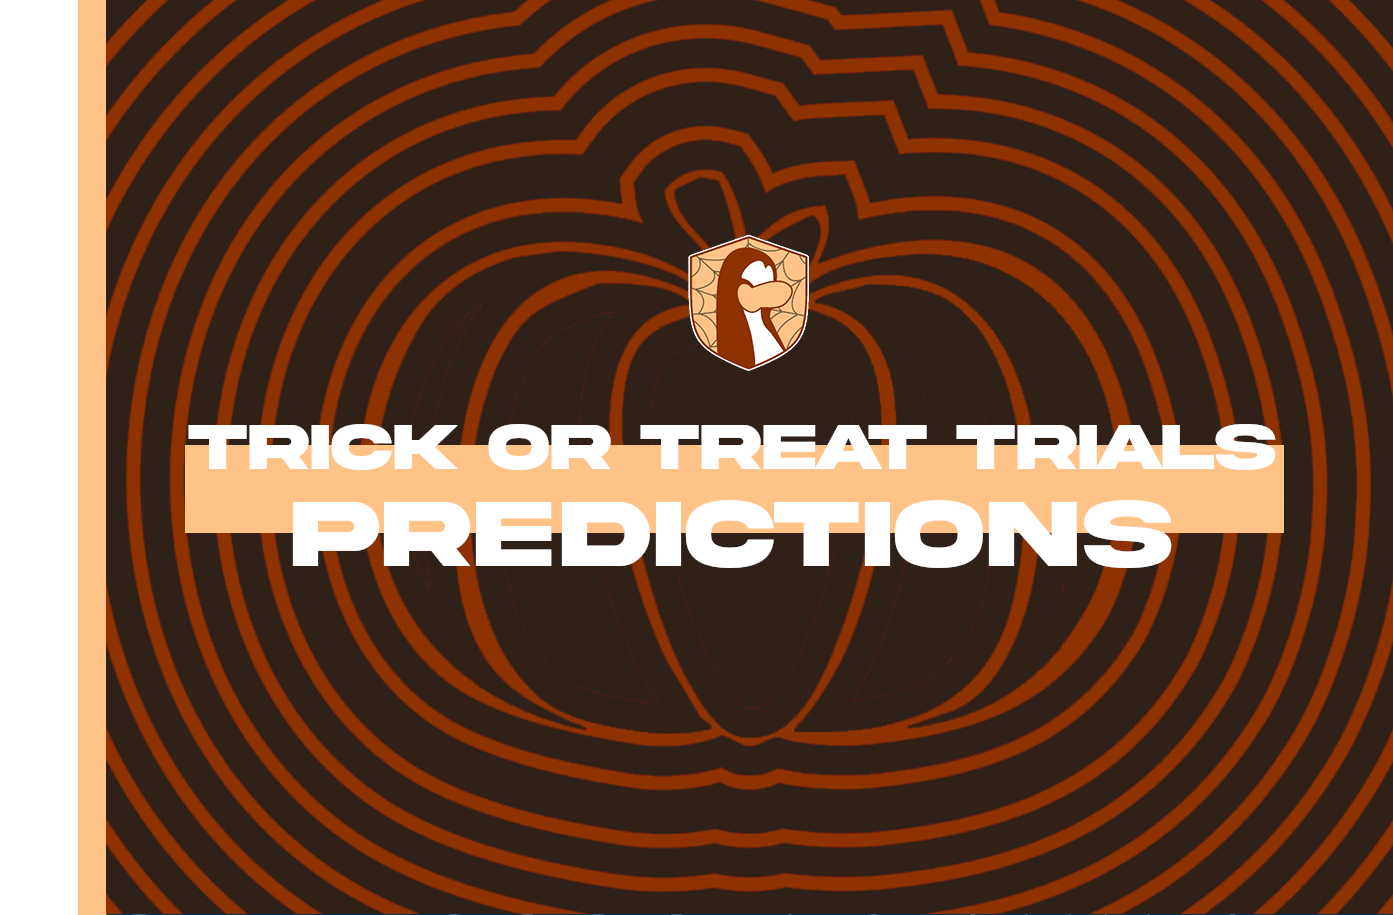 Trick or Treat Trials predictions